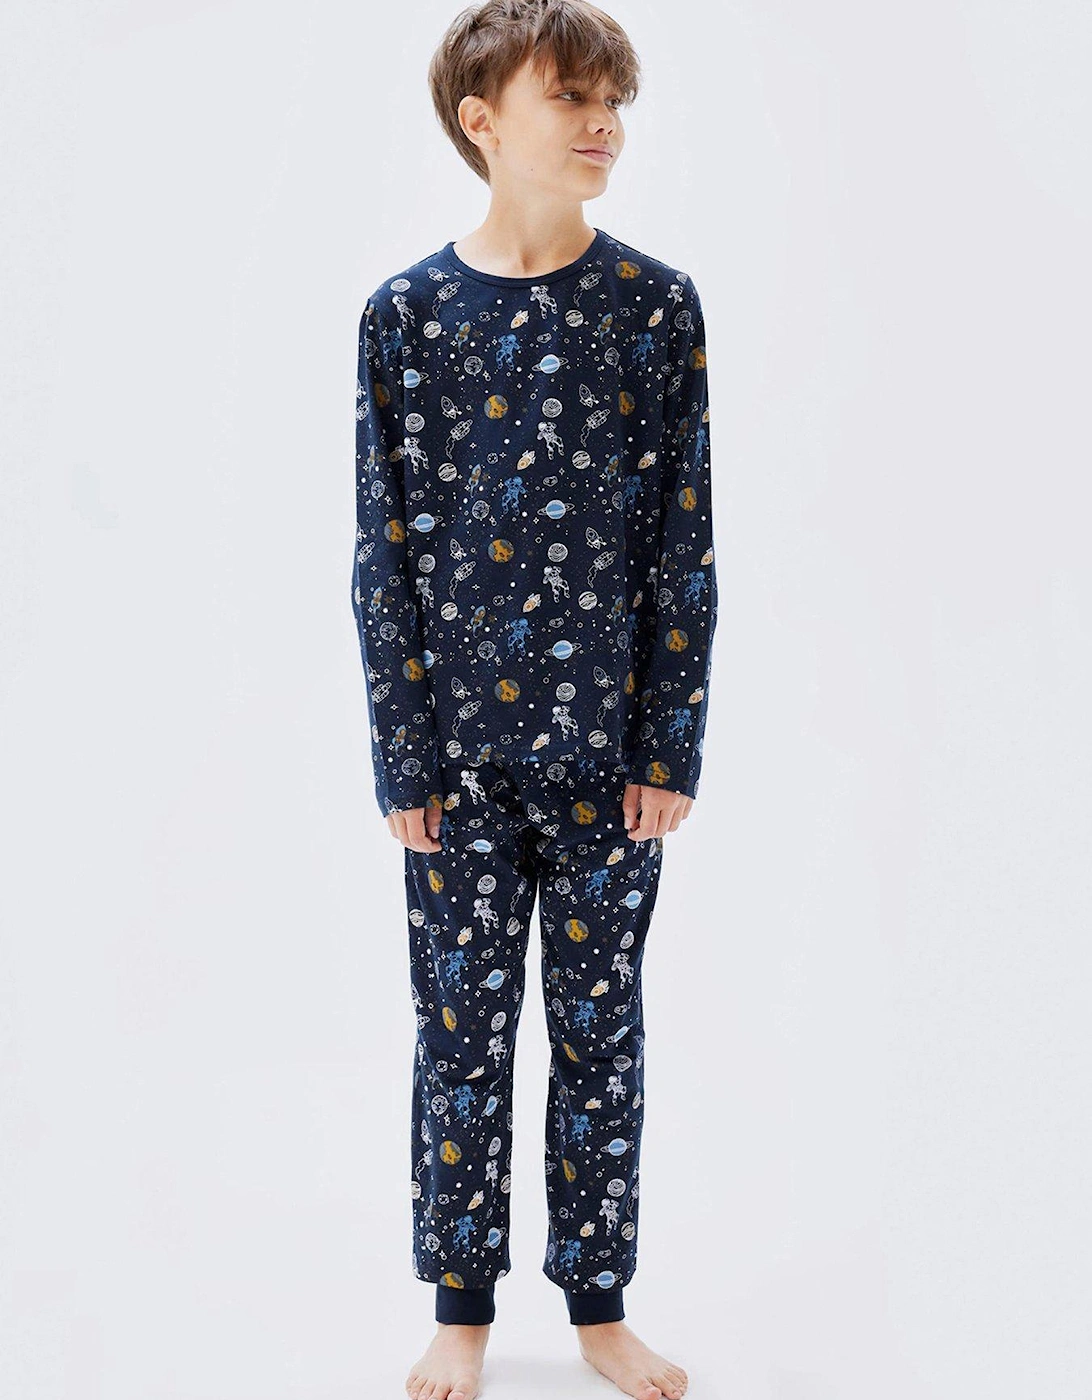 Boys Space Print Pyjamas - Dark Sapphire